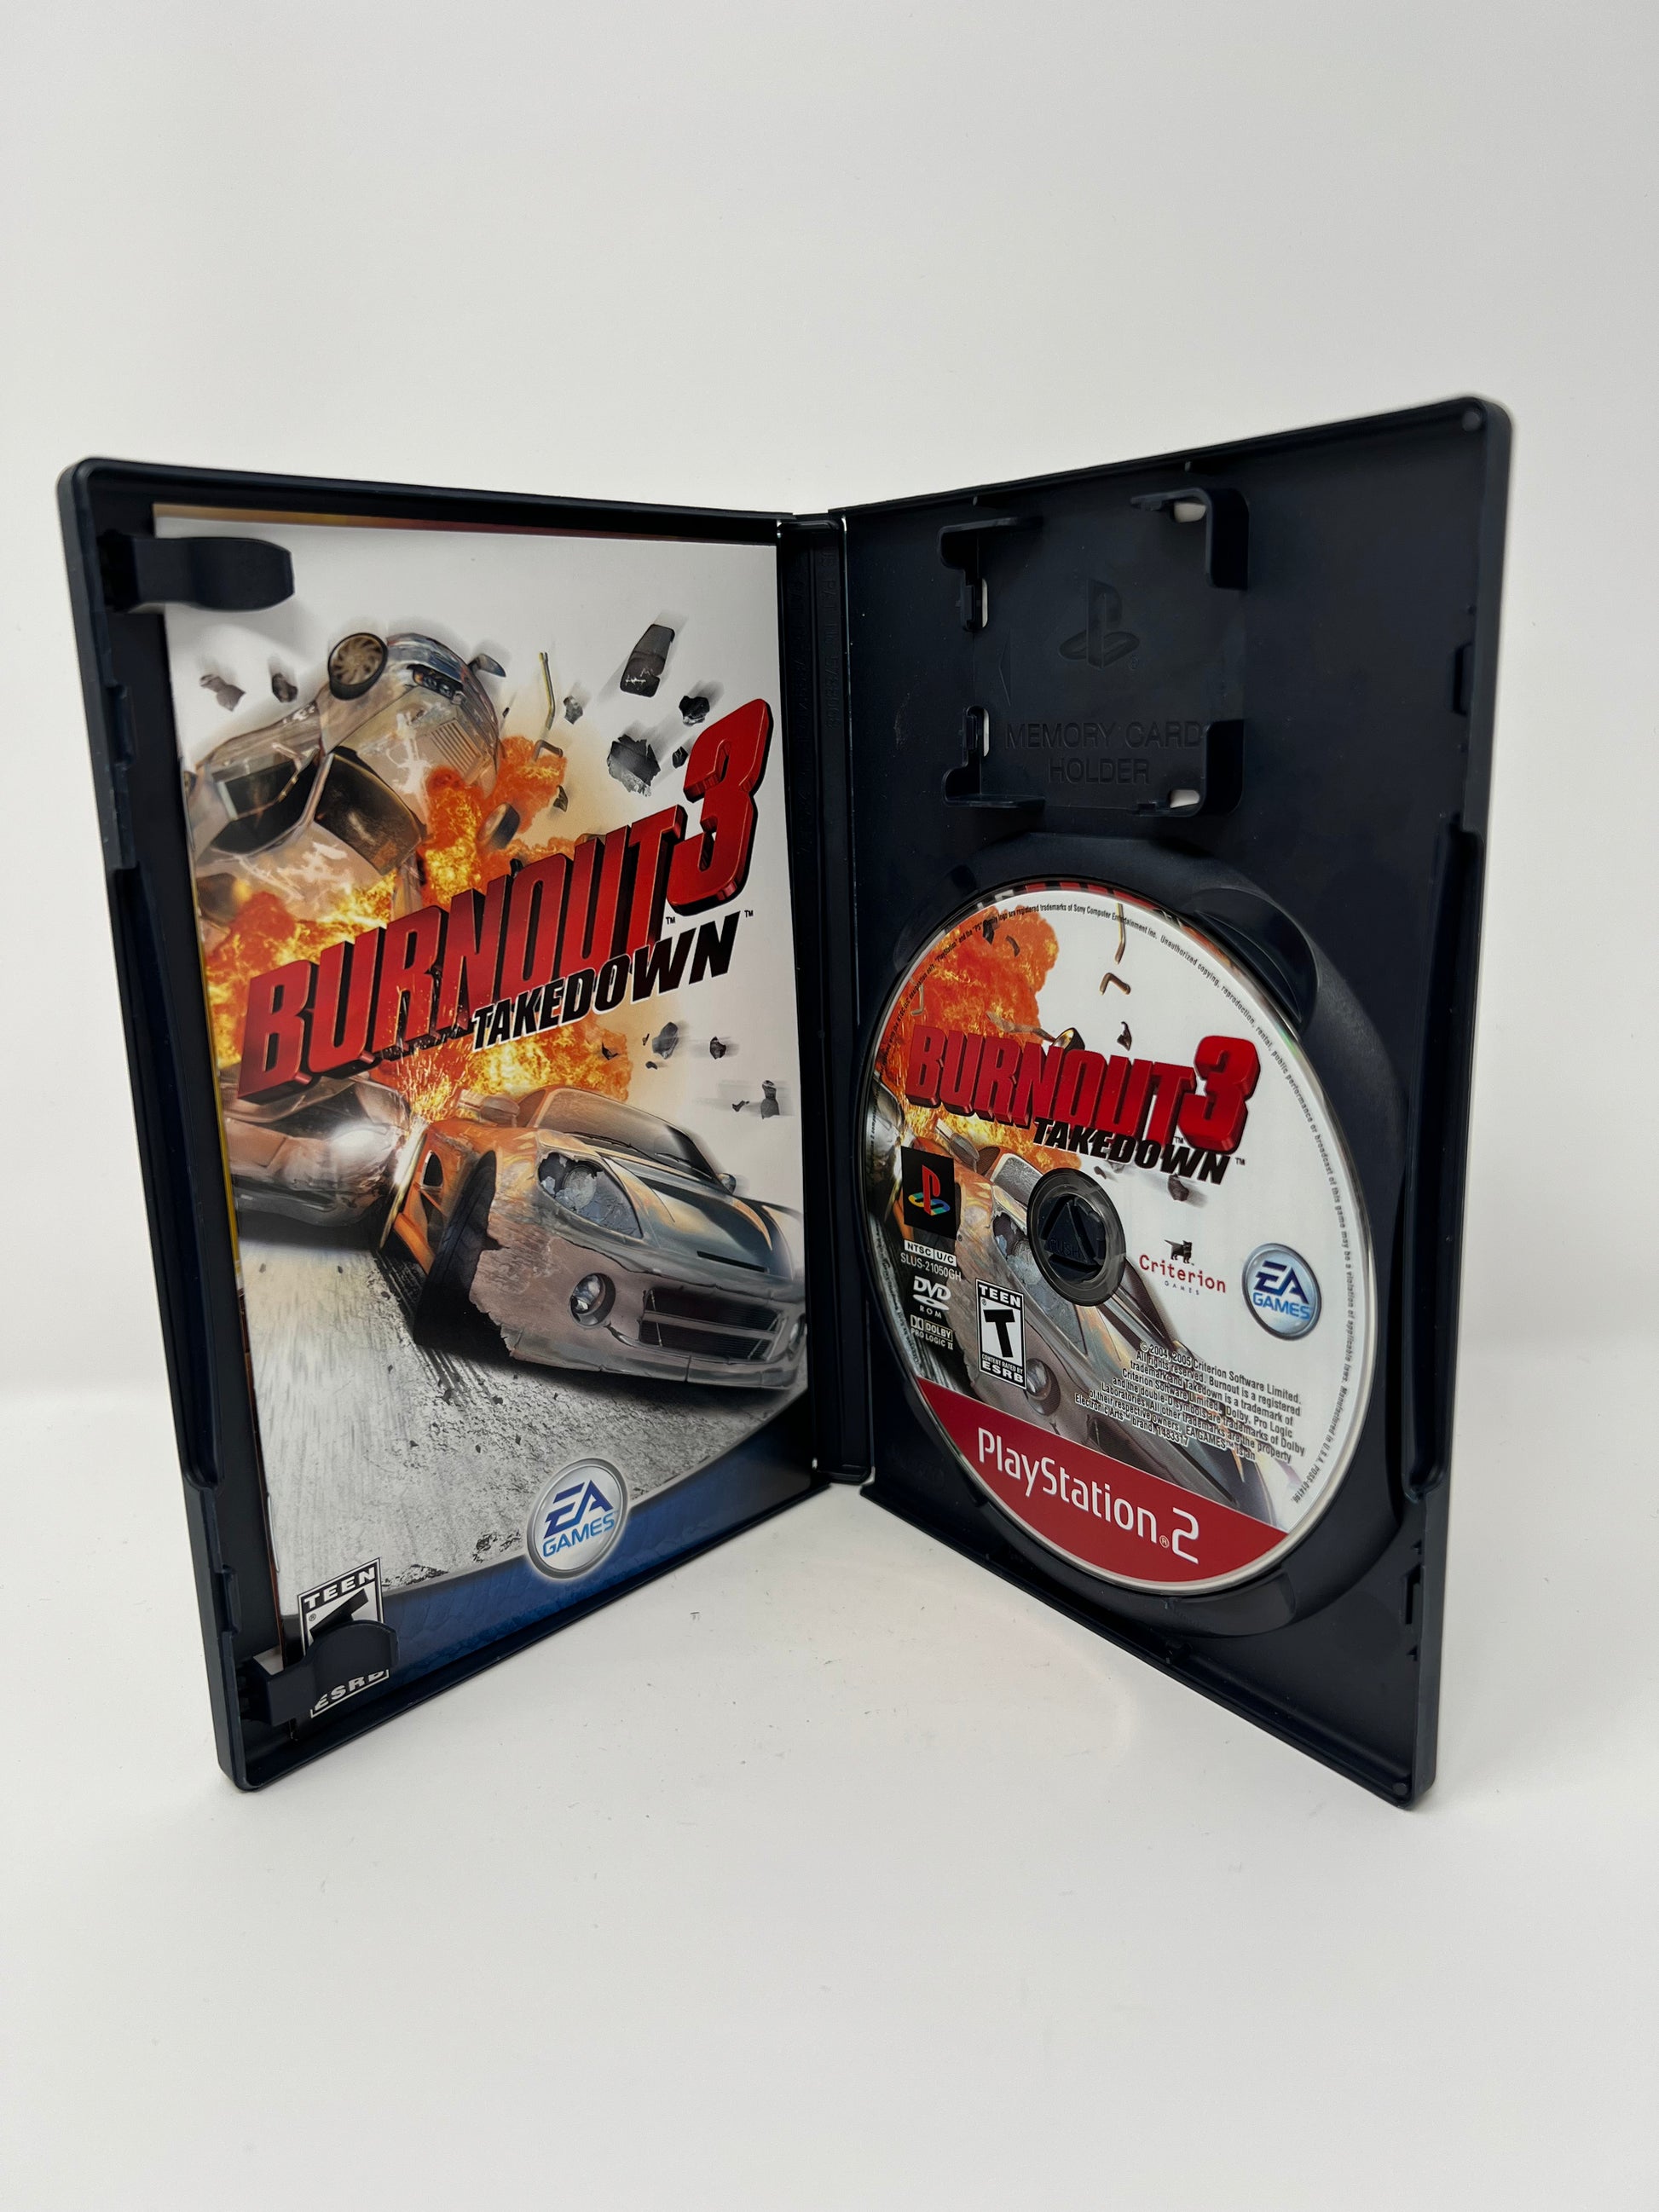 Burnout 3 Takedown para PS2